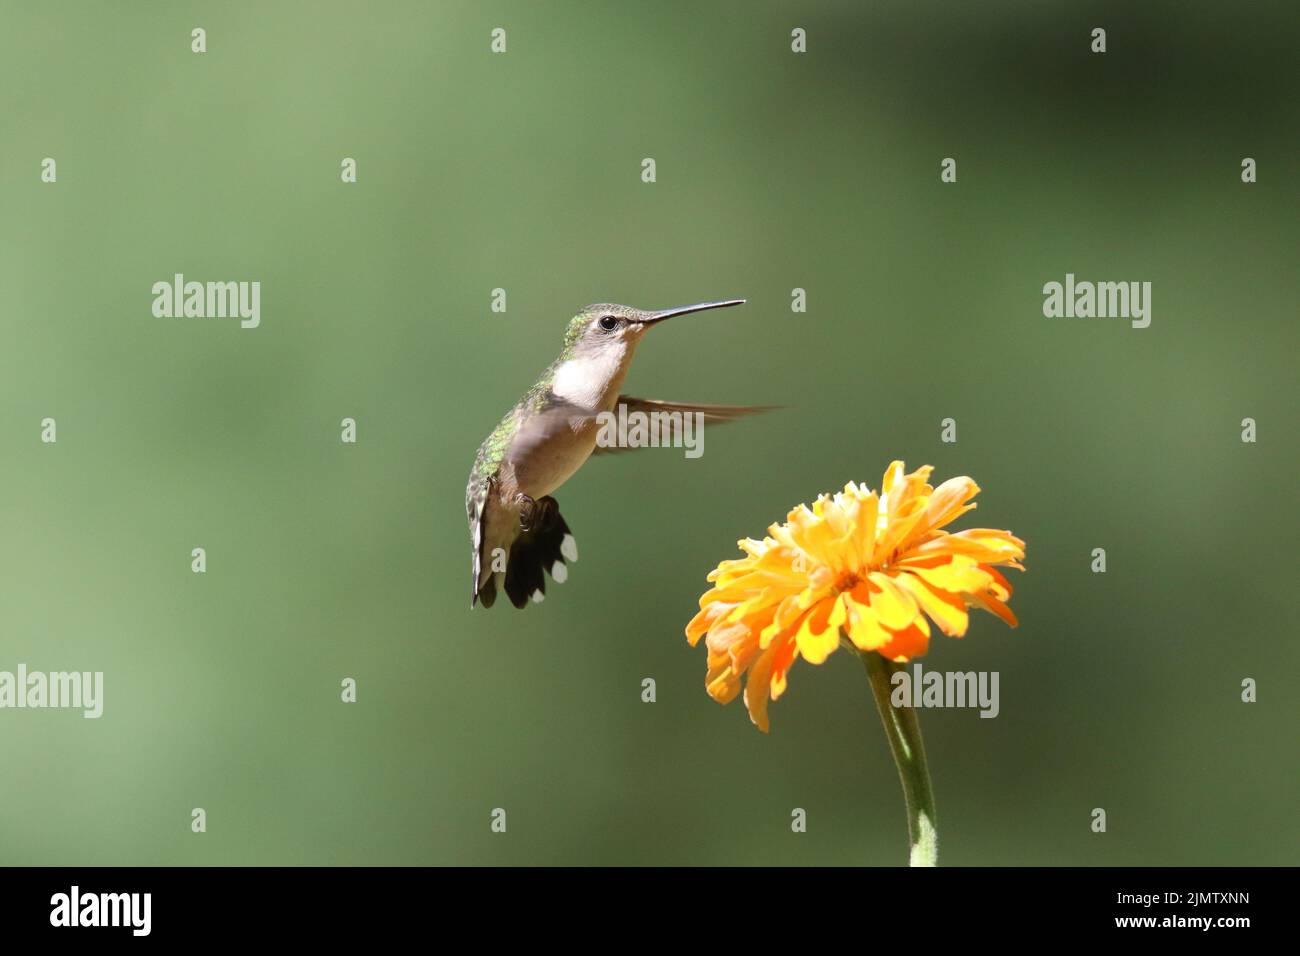 Femmina rubino gummingbird Archilochus colubris nutrimento su un fiore zinnia in estate Foto Stock